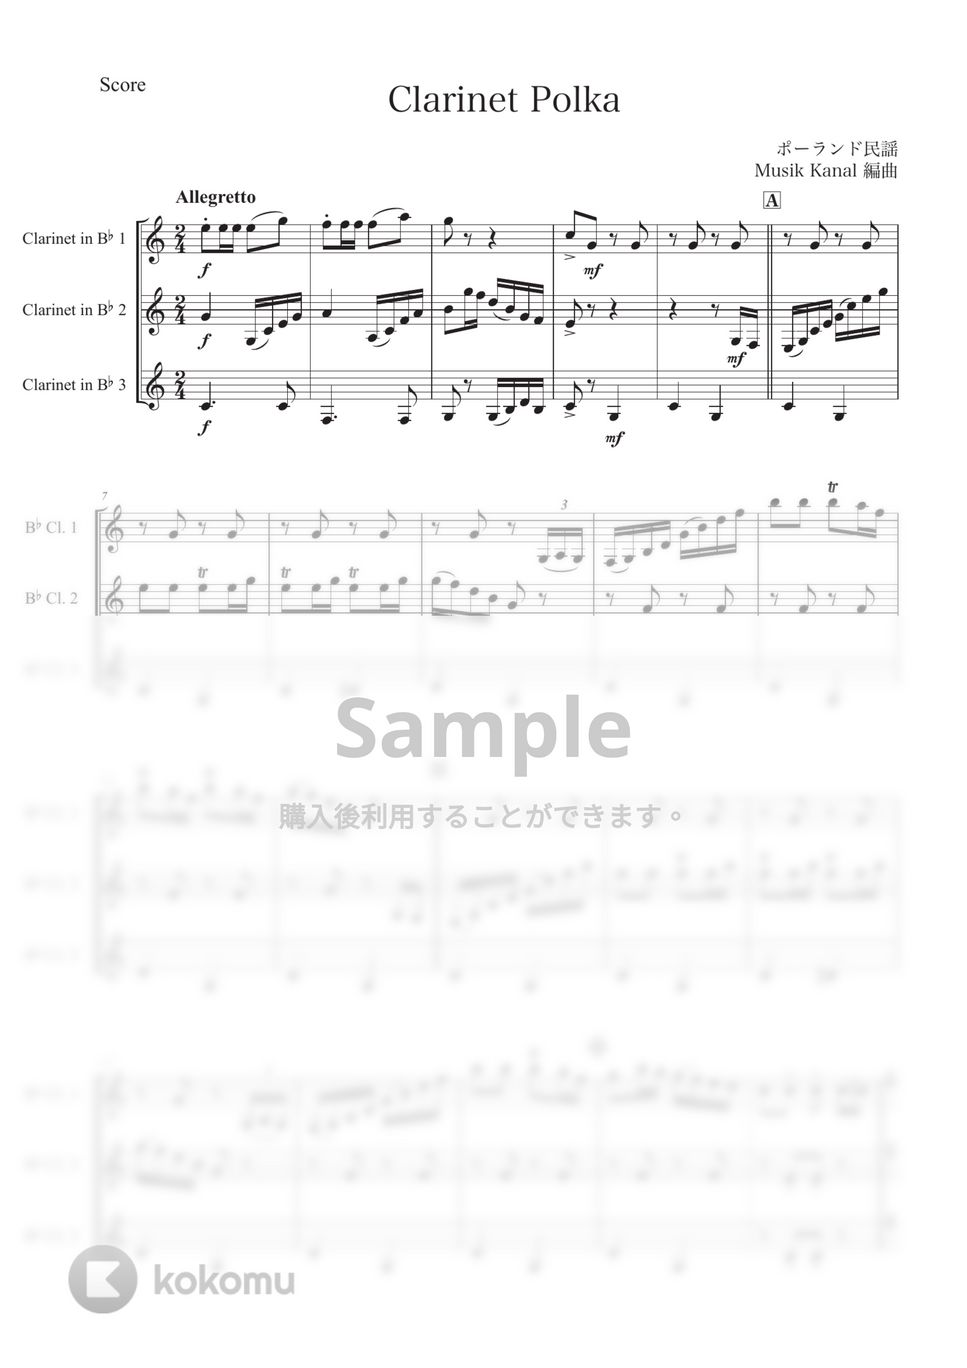 クラリネット・ポルカ【クラリネット三重奏】 by Musik Kanal